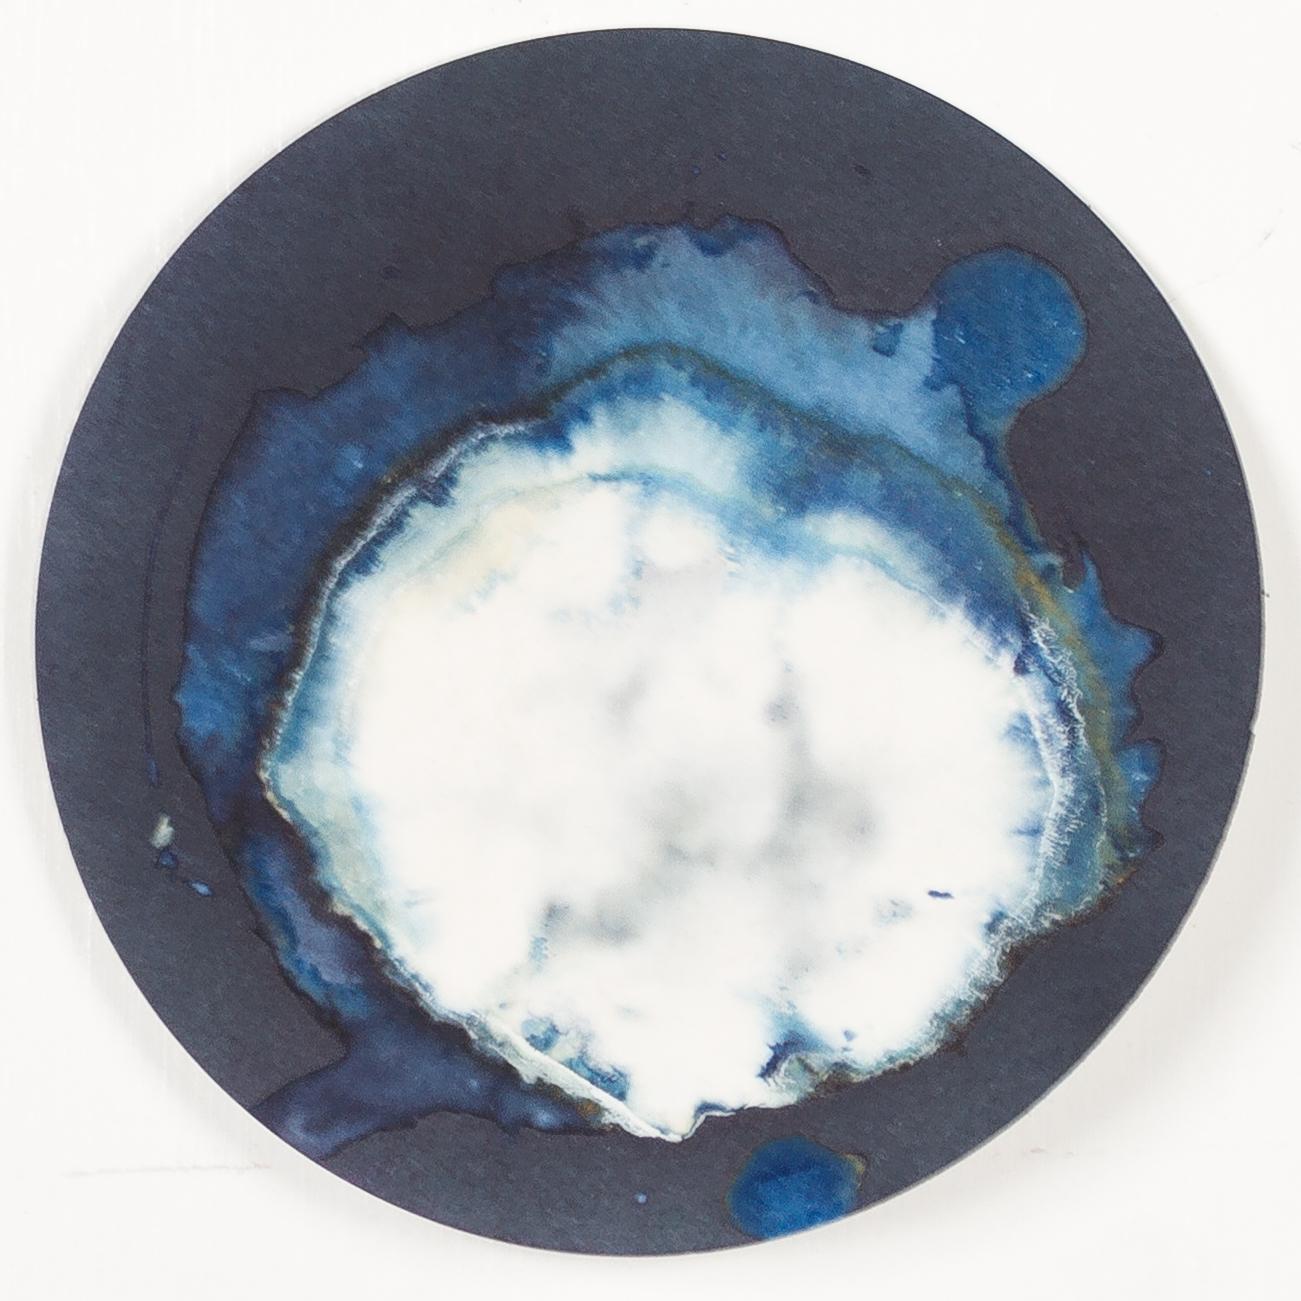 Esponjas 8, 11 und 16. Cyanotypie-Fotografien, montiert in einer hochfesten Glasschale (Abstrakt), Sculpture, von Paola Davila